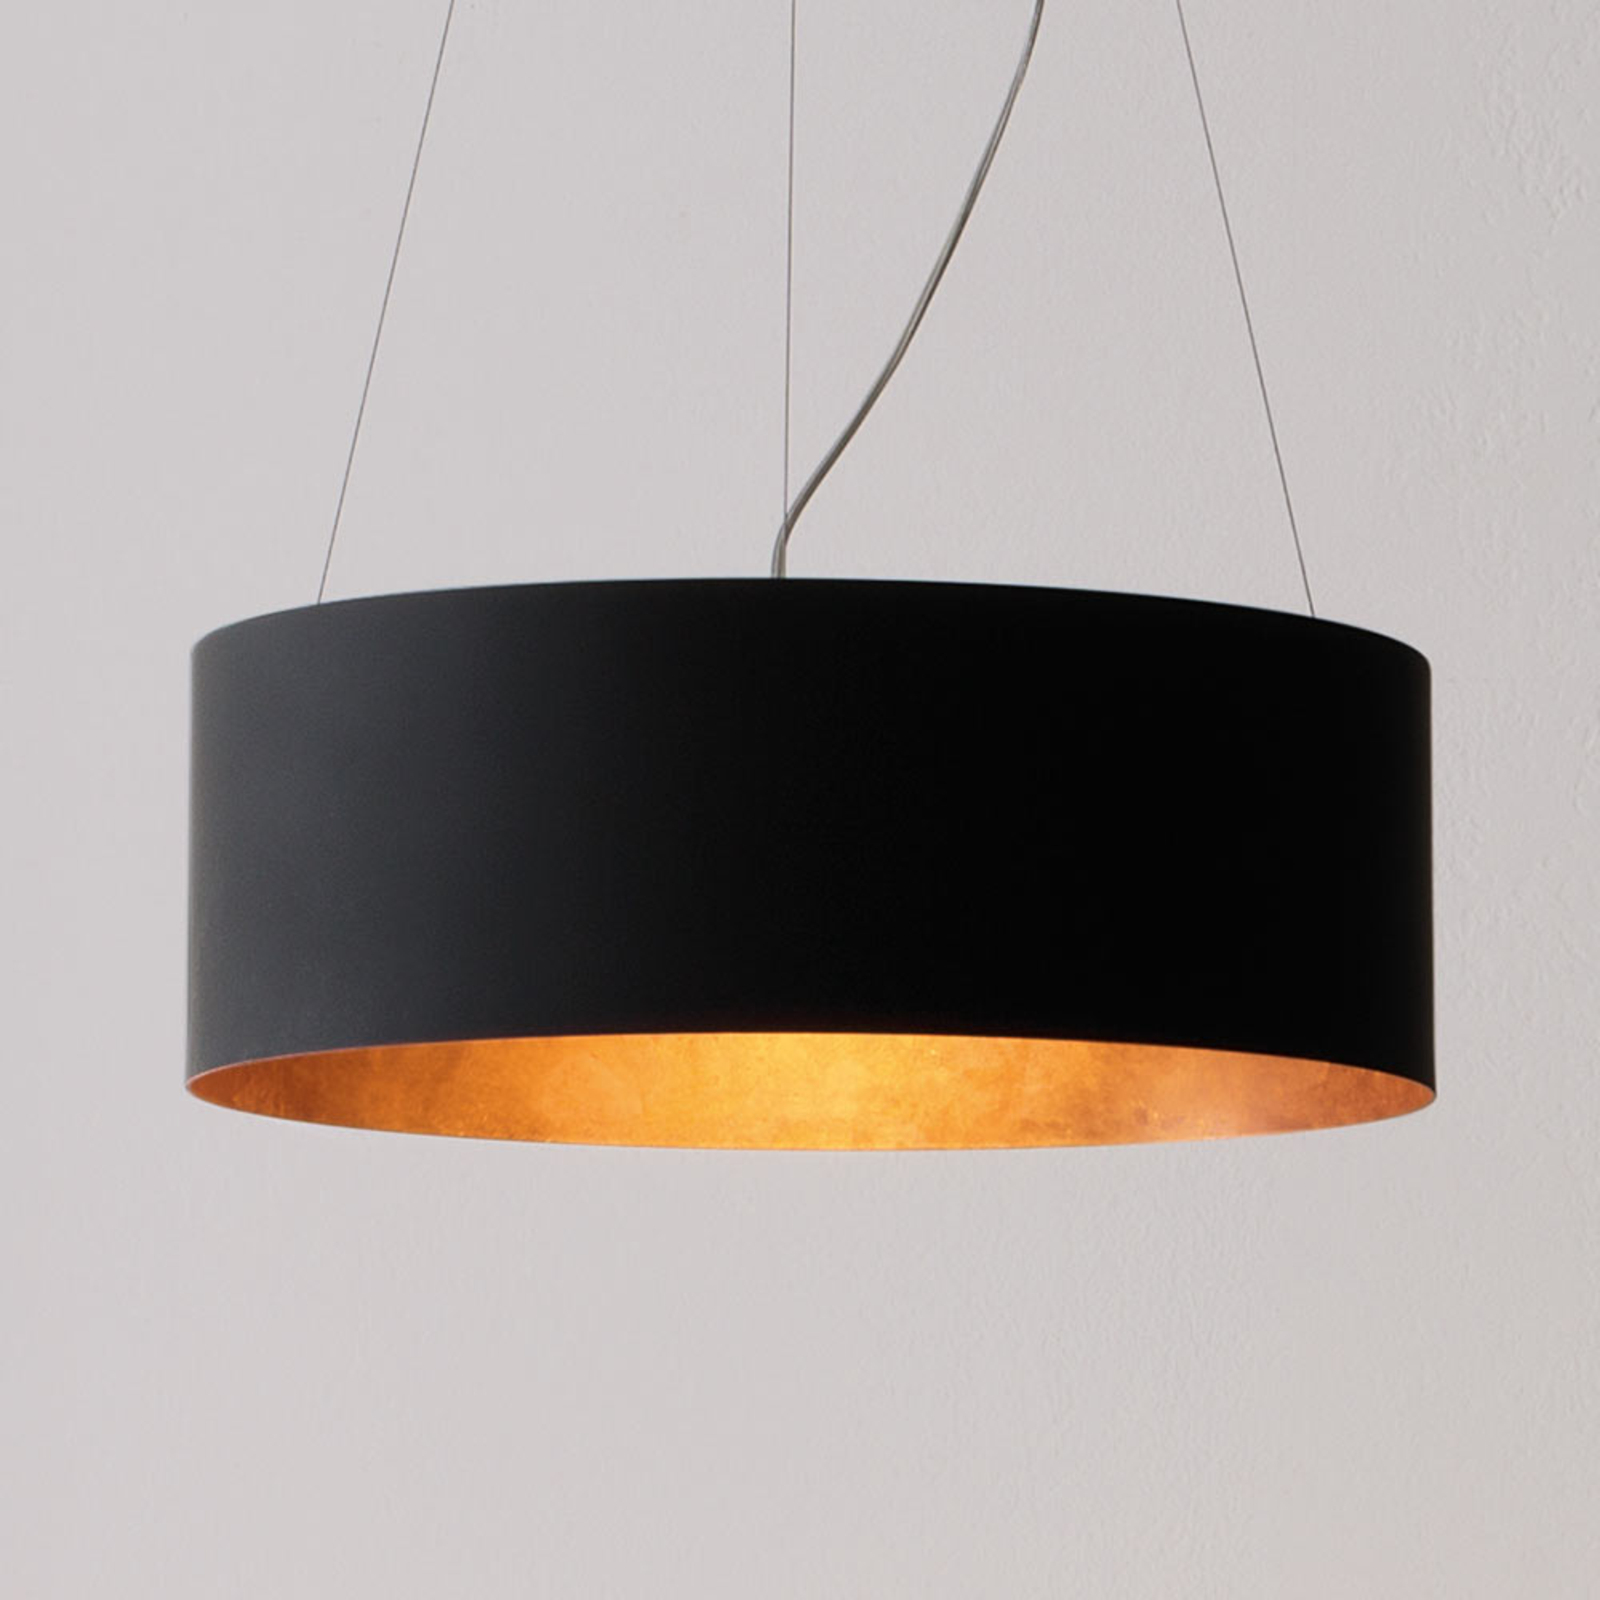 zuigen ten tweede begrijpen ICONE Olimpia LED hanglamp, zwart-koper | Lampen24.nl